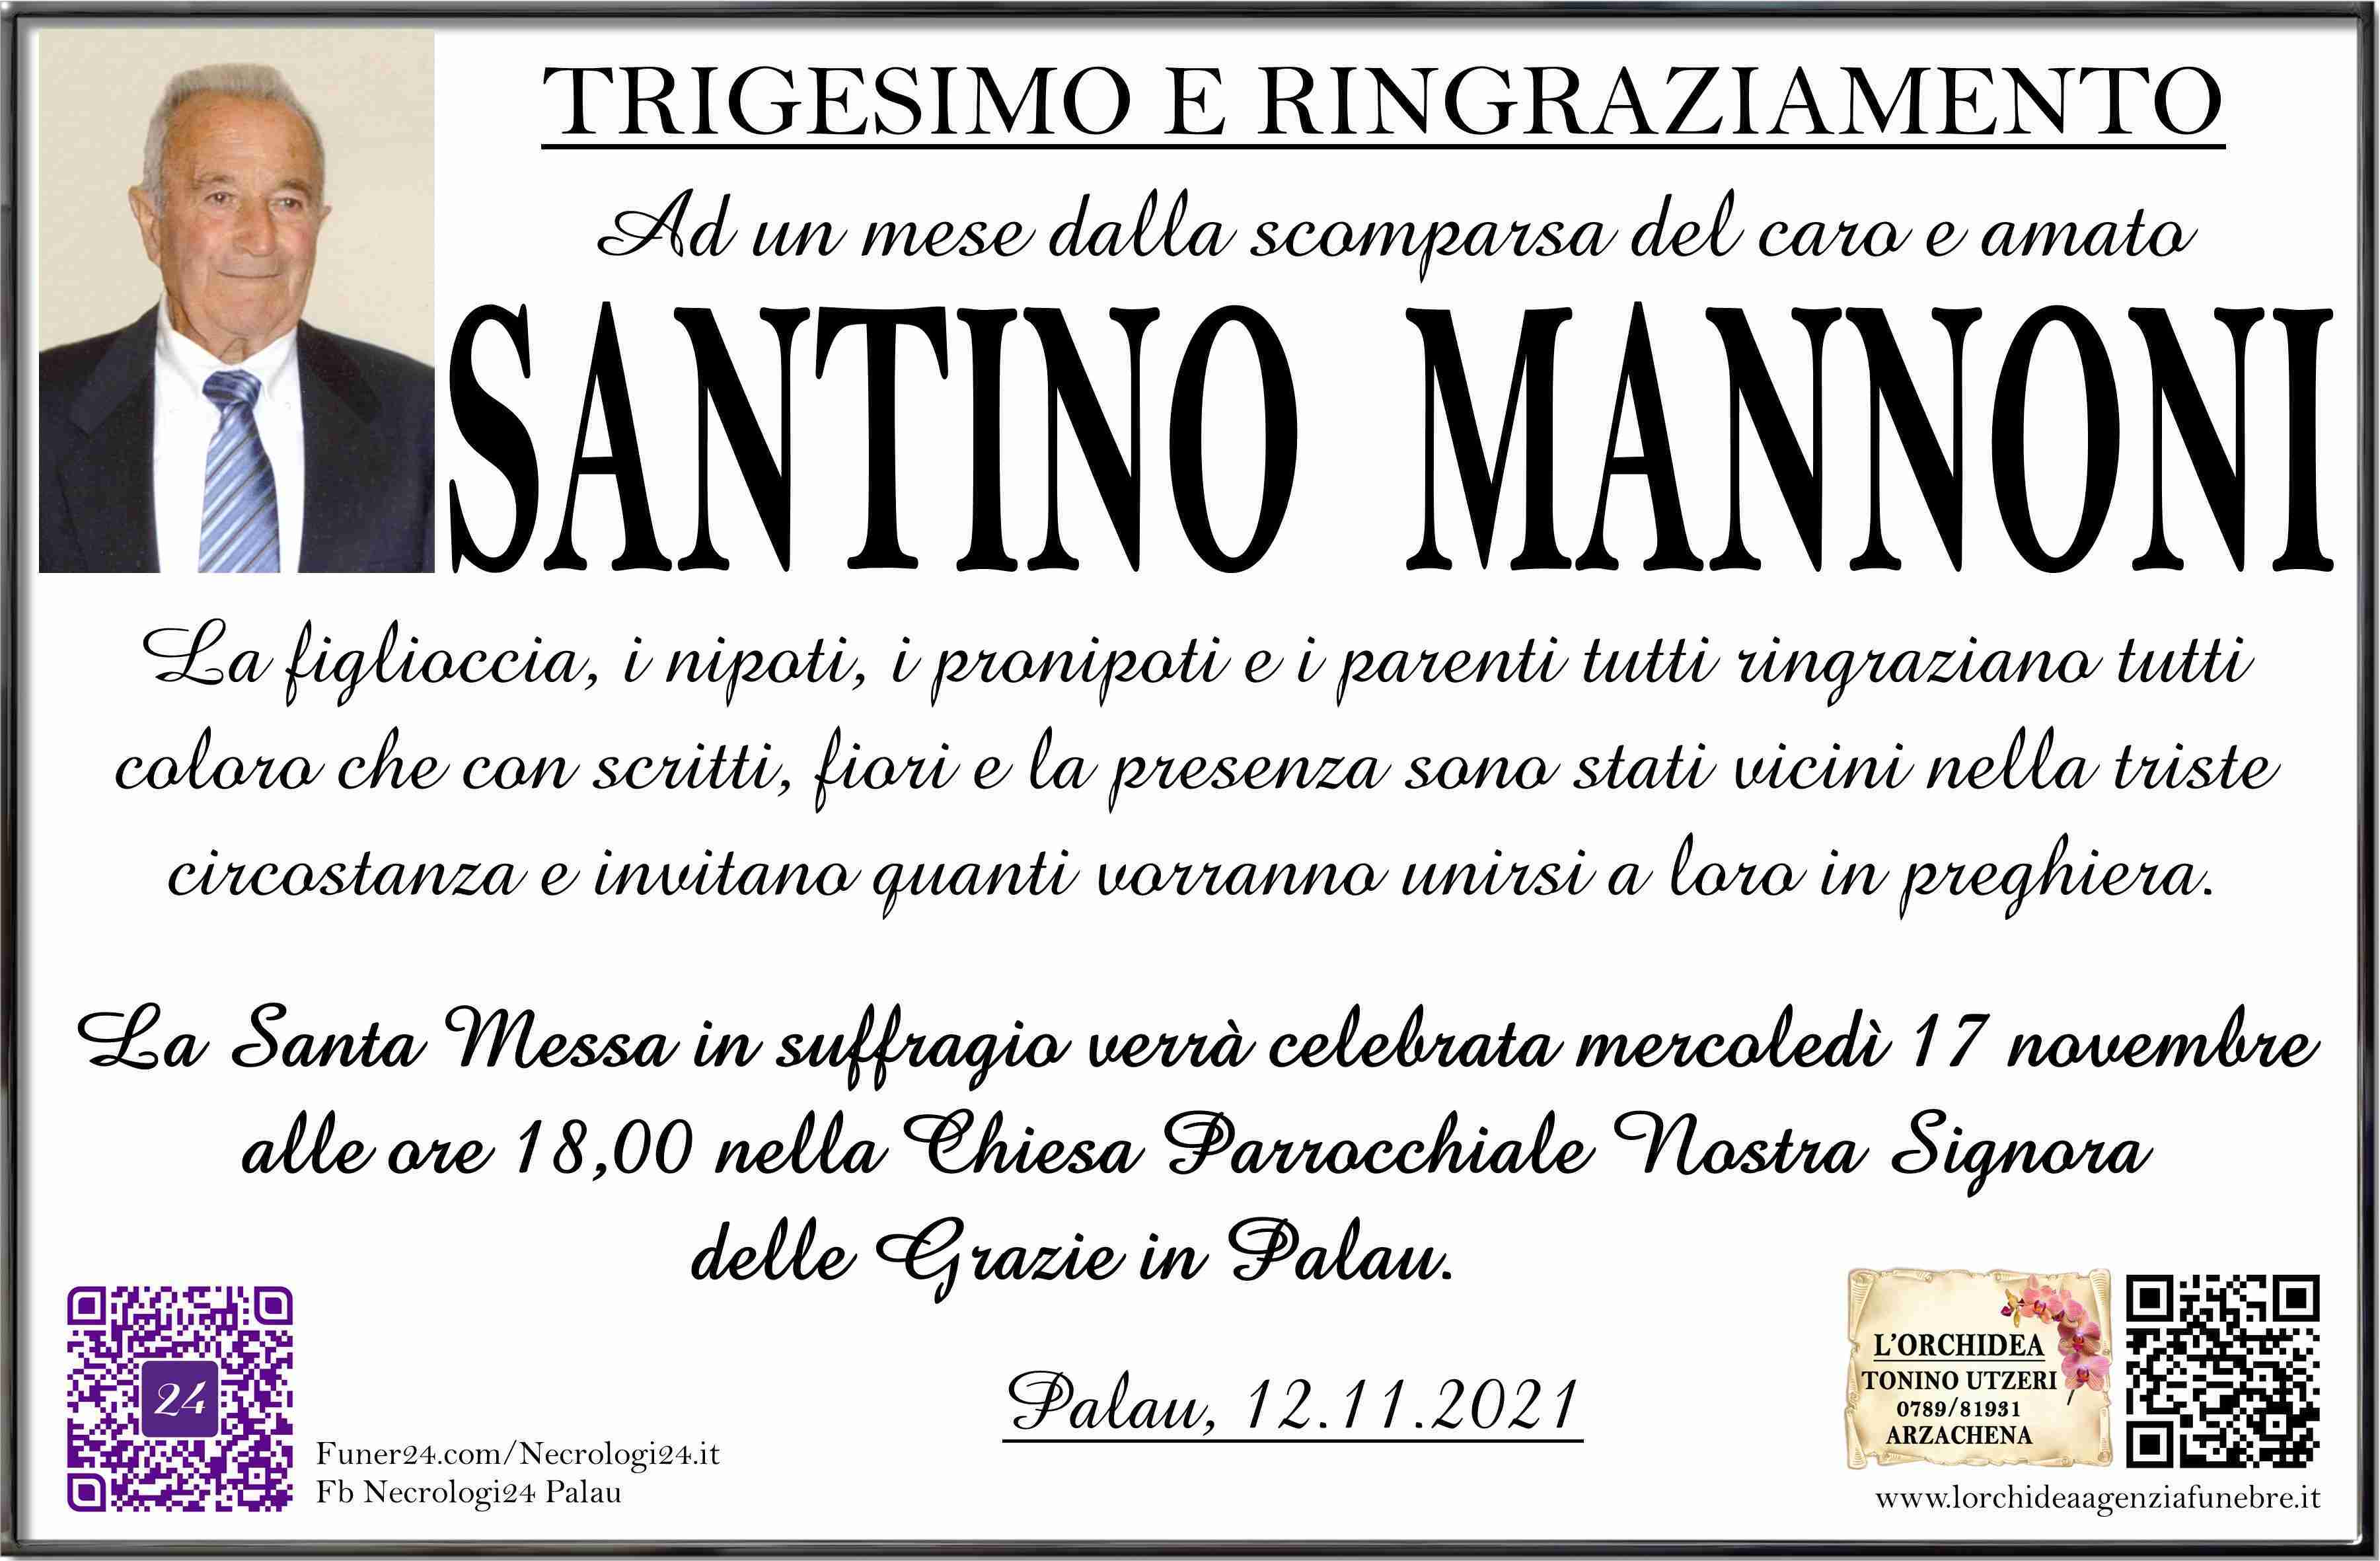 Santino Mannoni